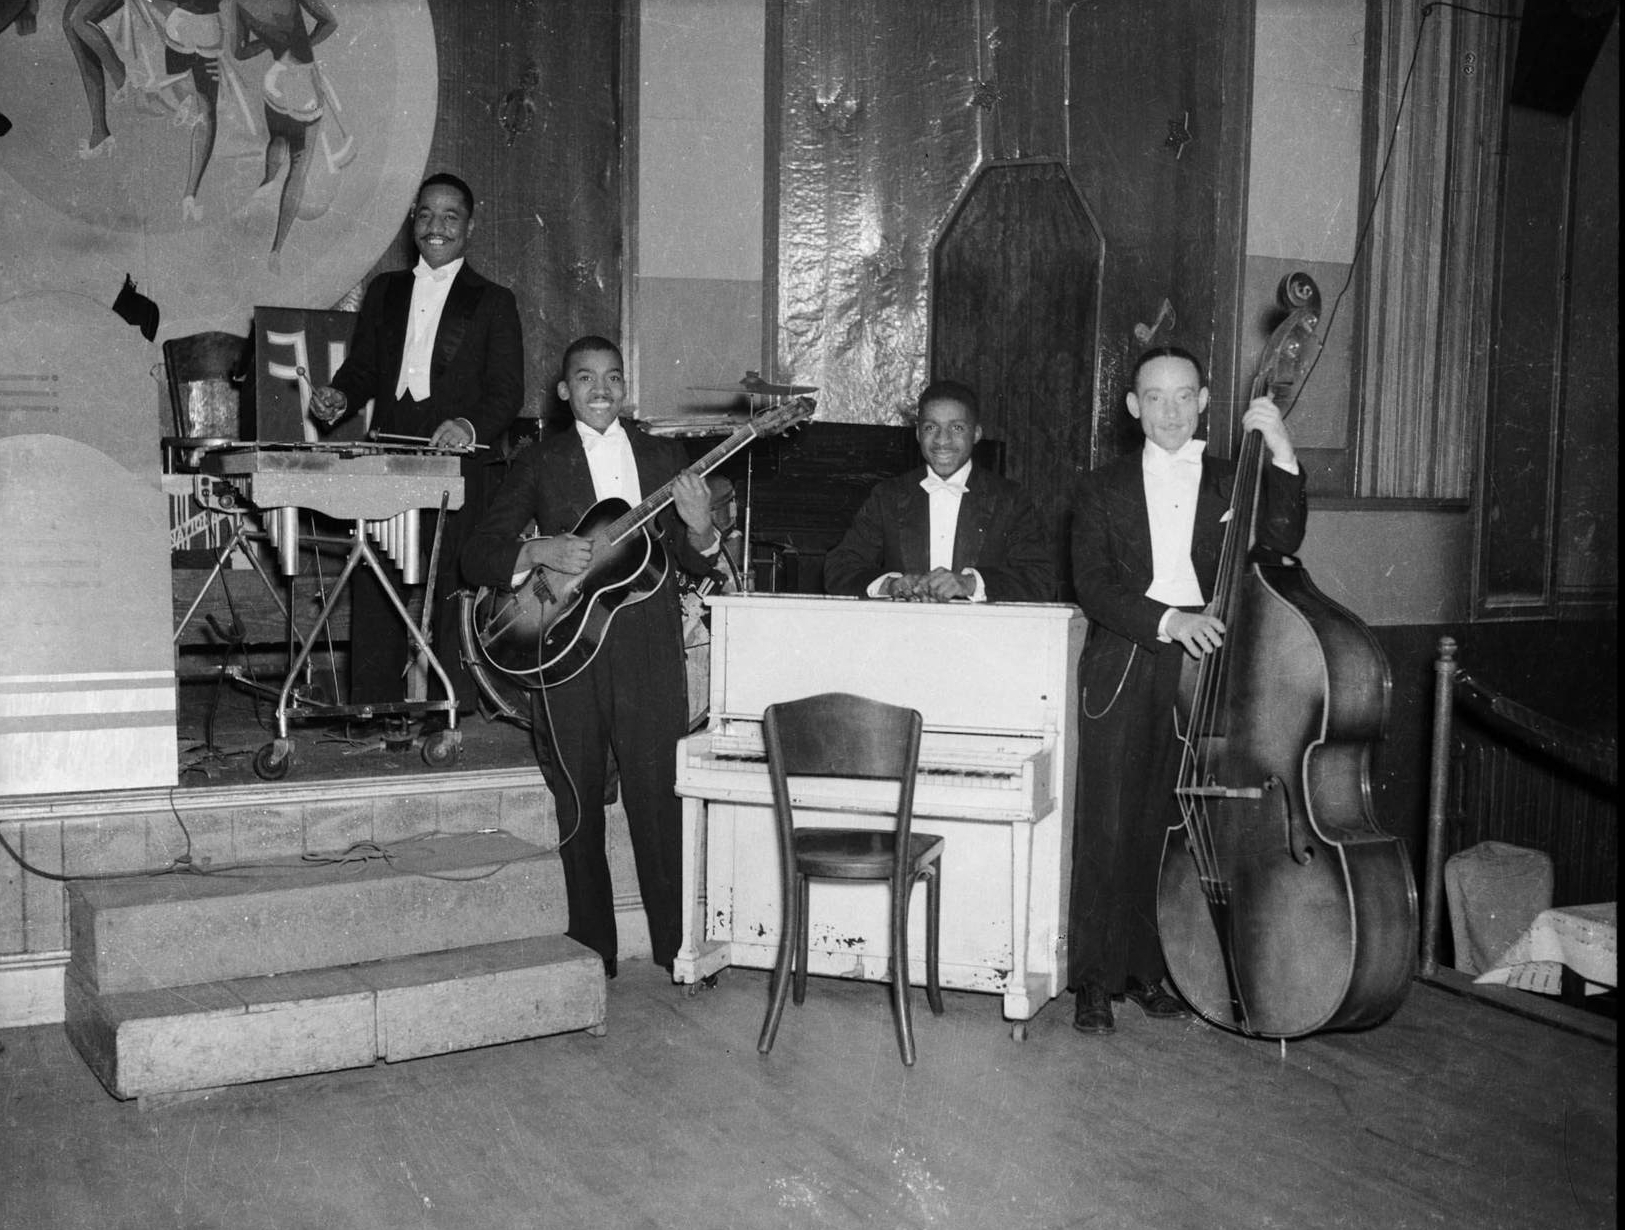 Men playing jazz on stage